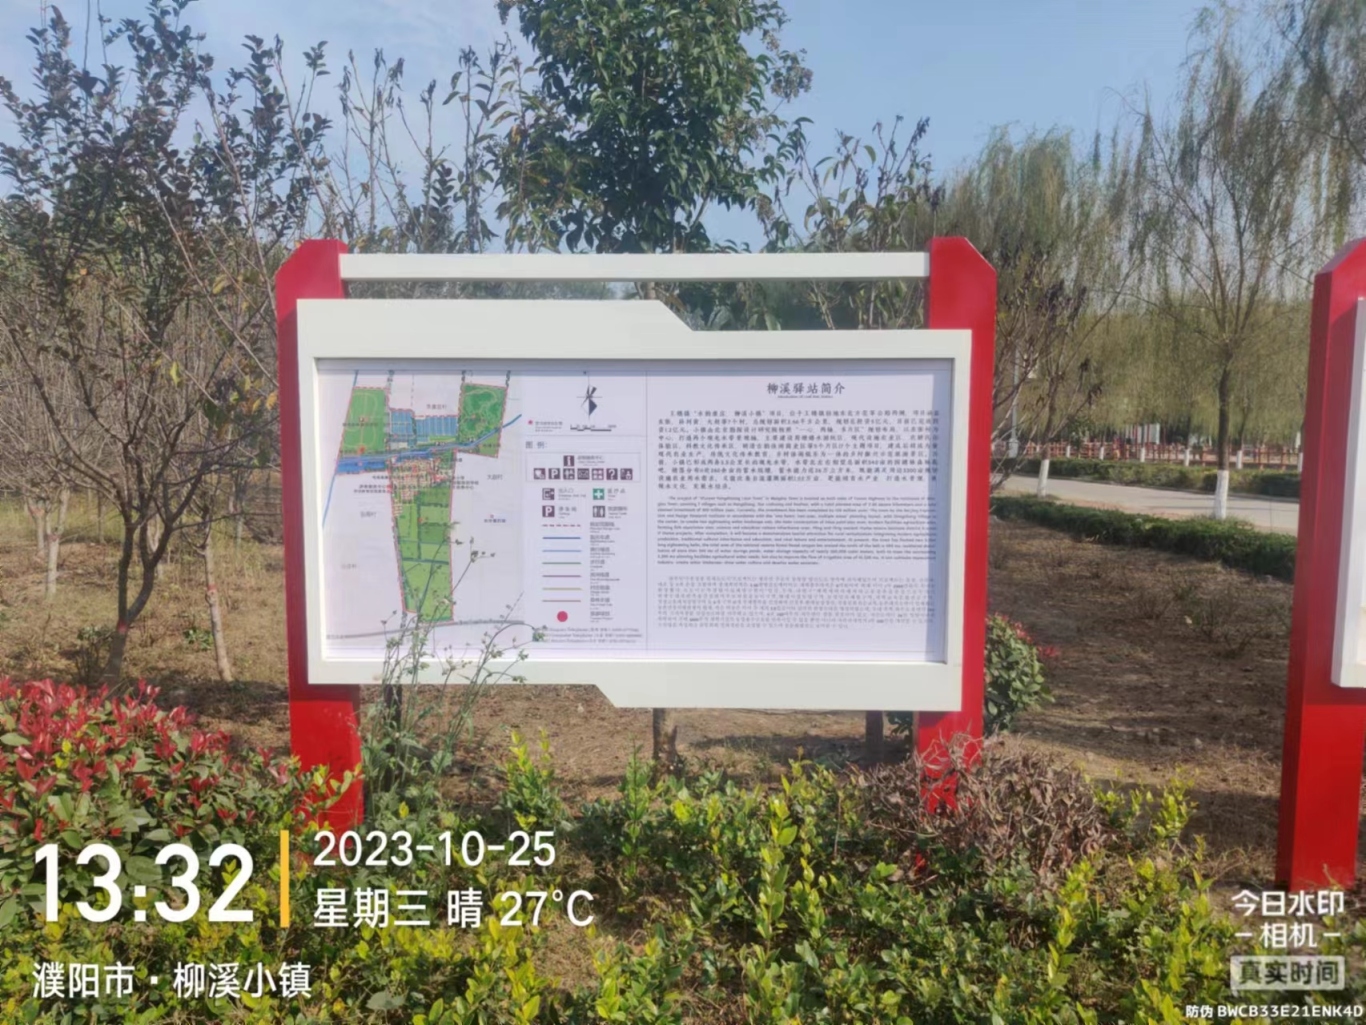 王楼镇旅游示范村导视系统设计图28